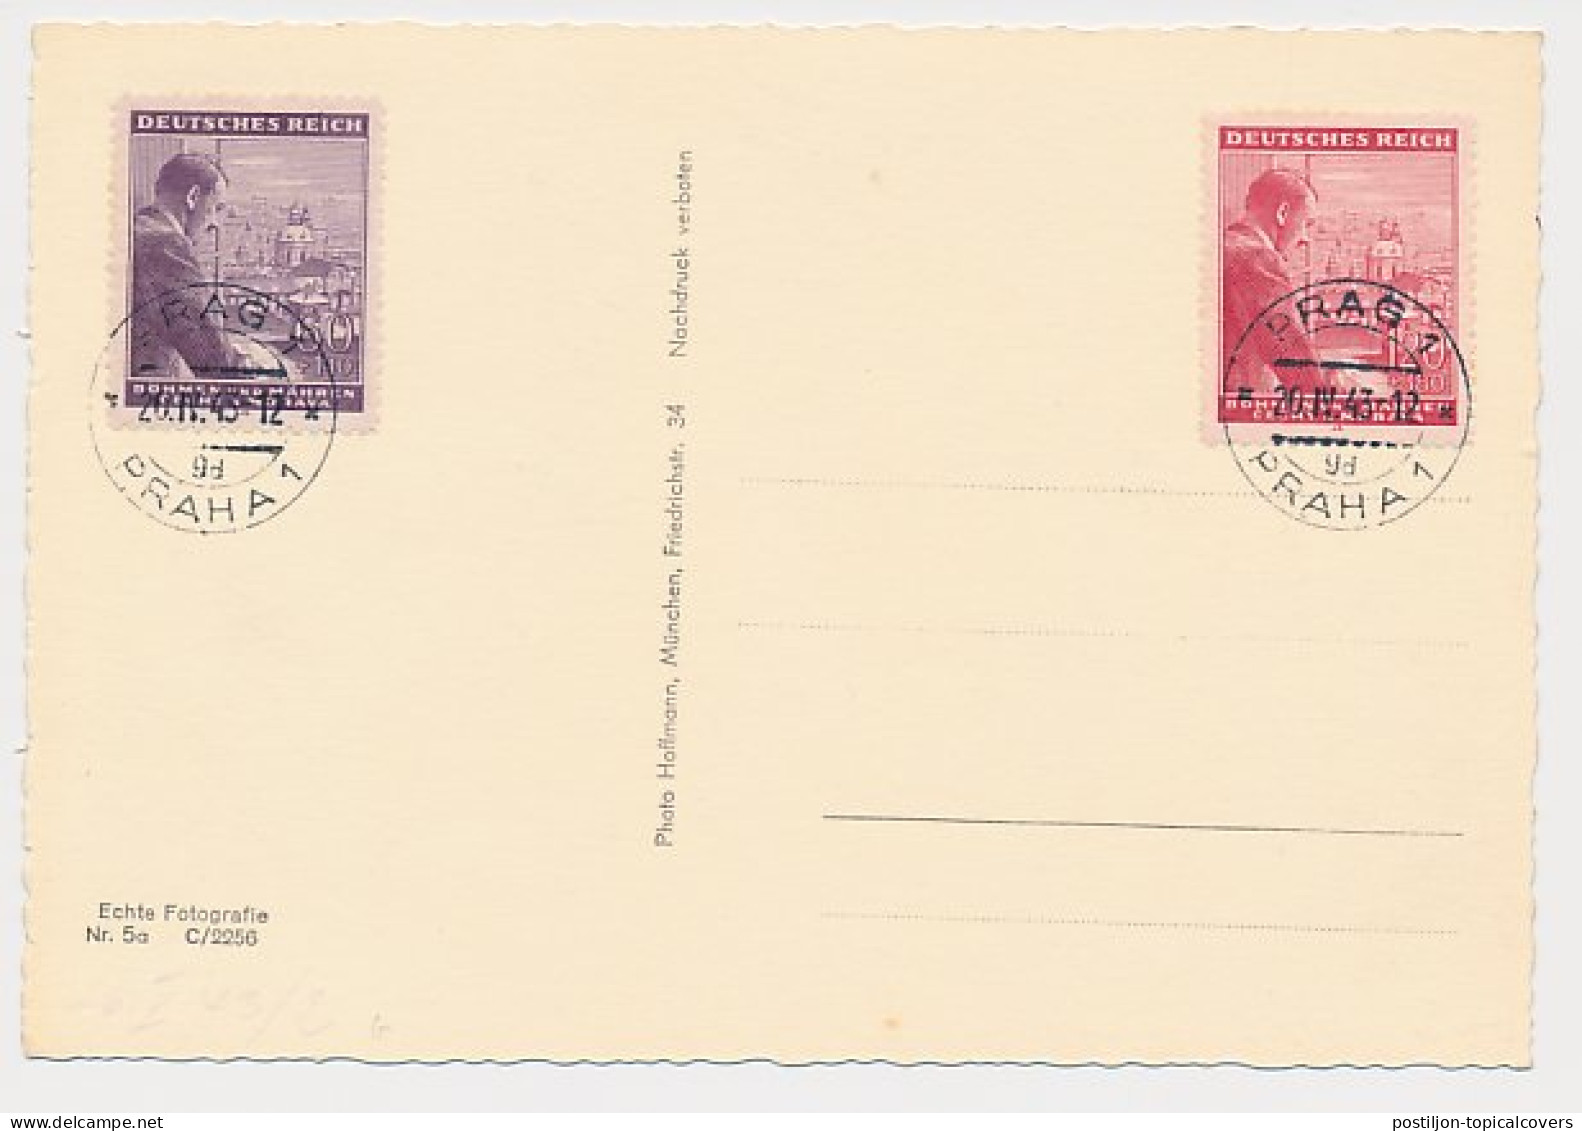 Postcard / Postmark Deutsches Reich / Germany 1943 Adolf Hitler - 2. Weltkrieg